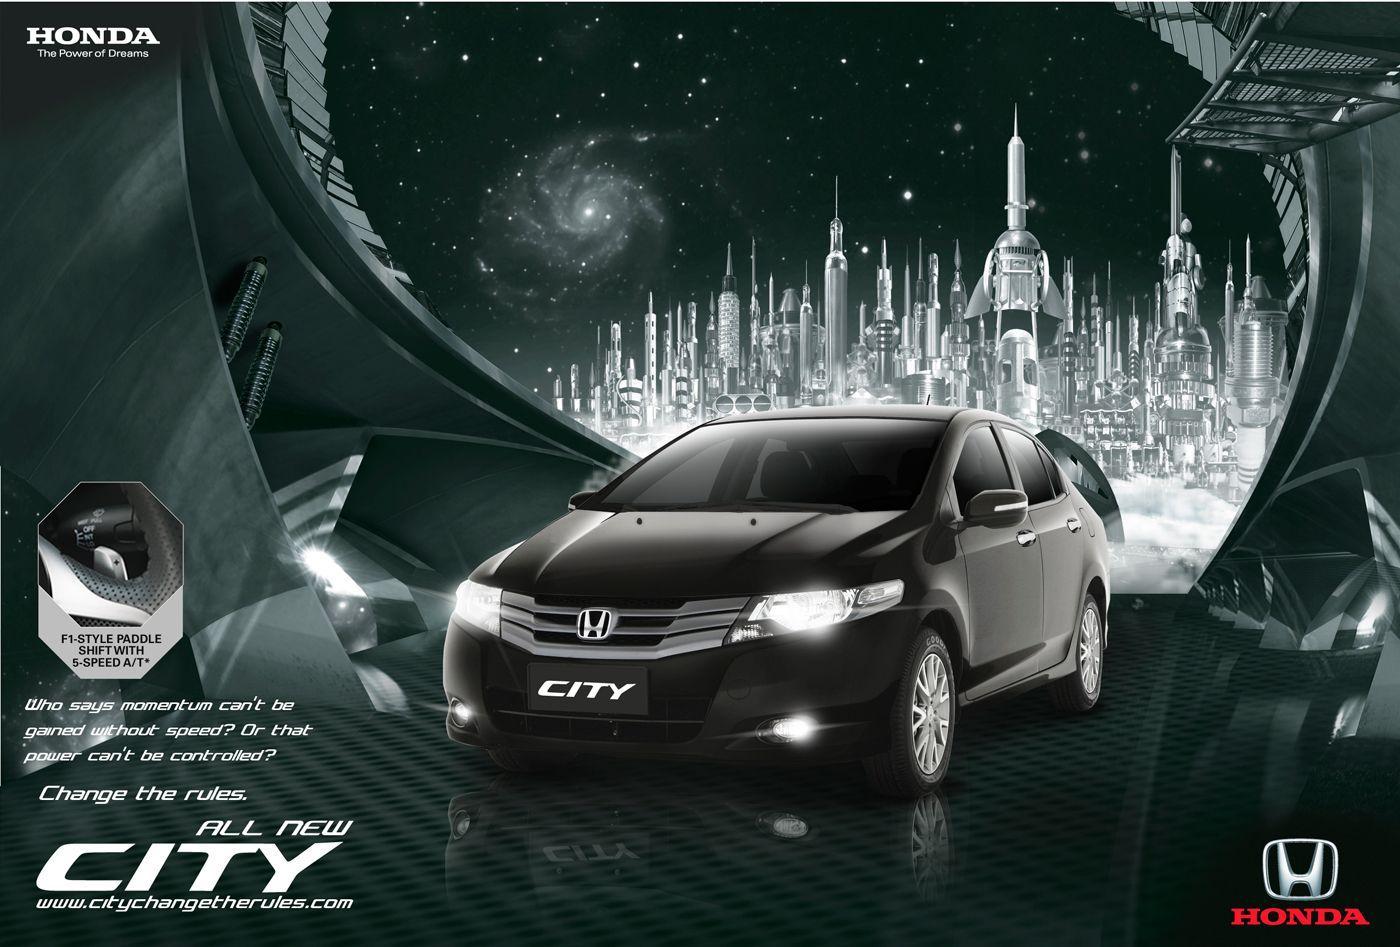 Honda City Wallpaper Hd 14. Honda City HD Image